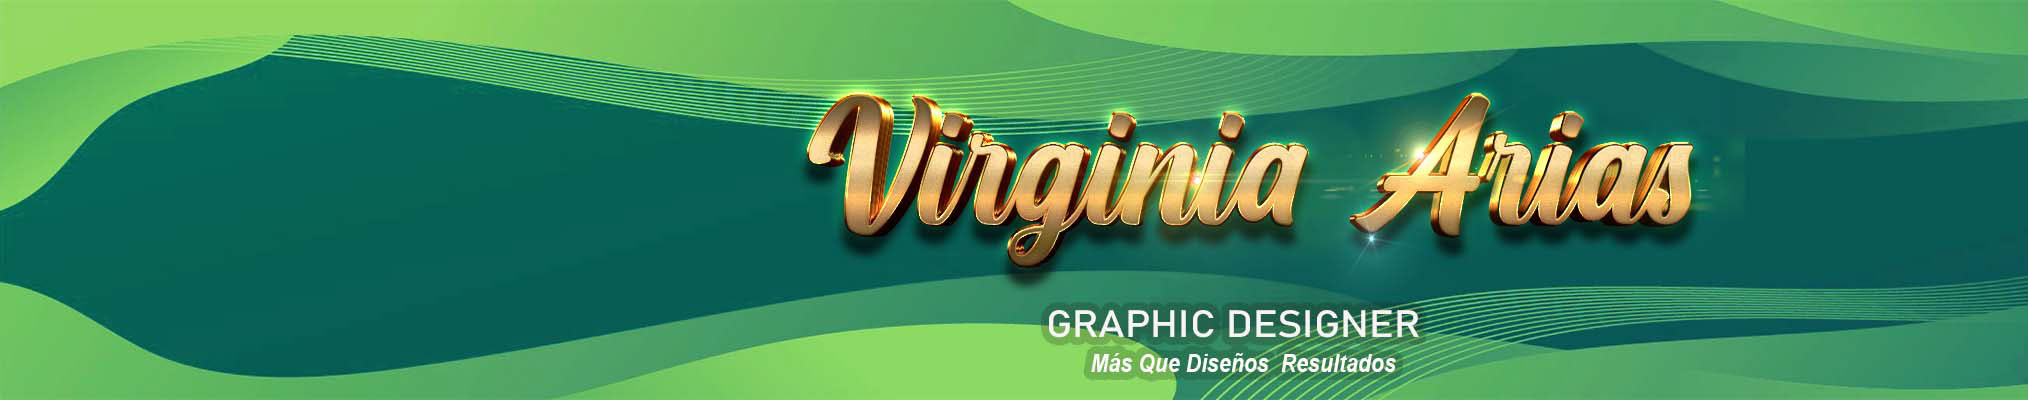 Virginia Arias's profile banner